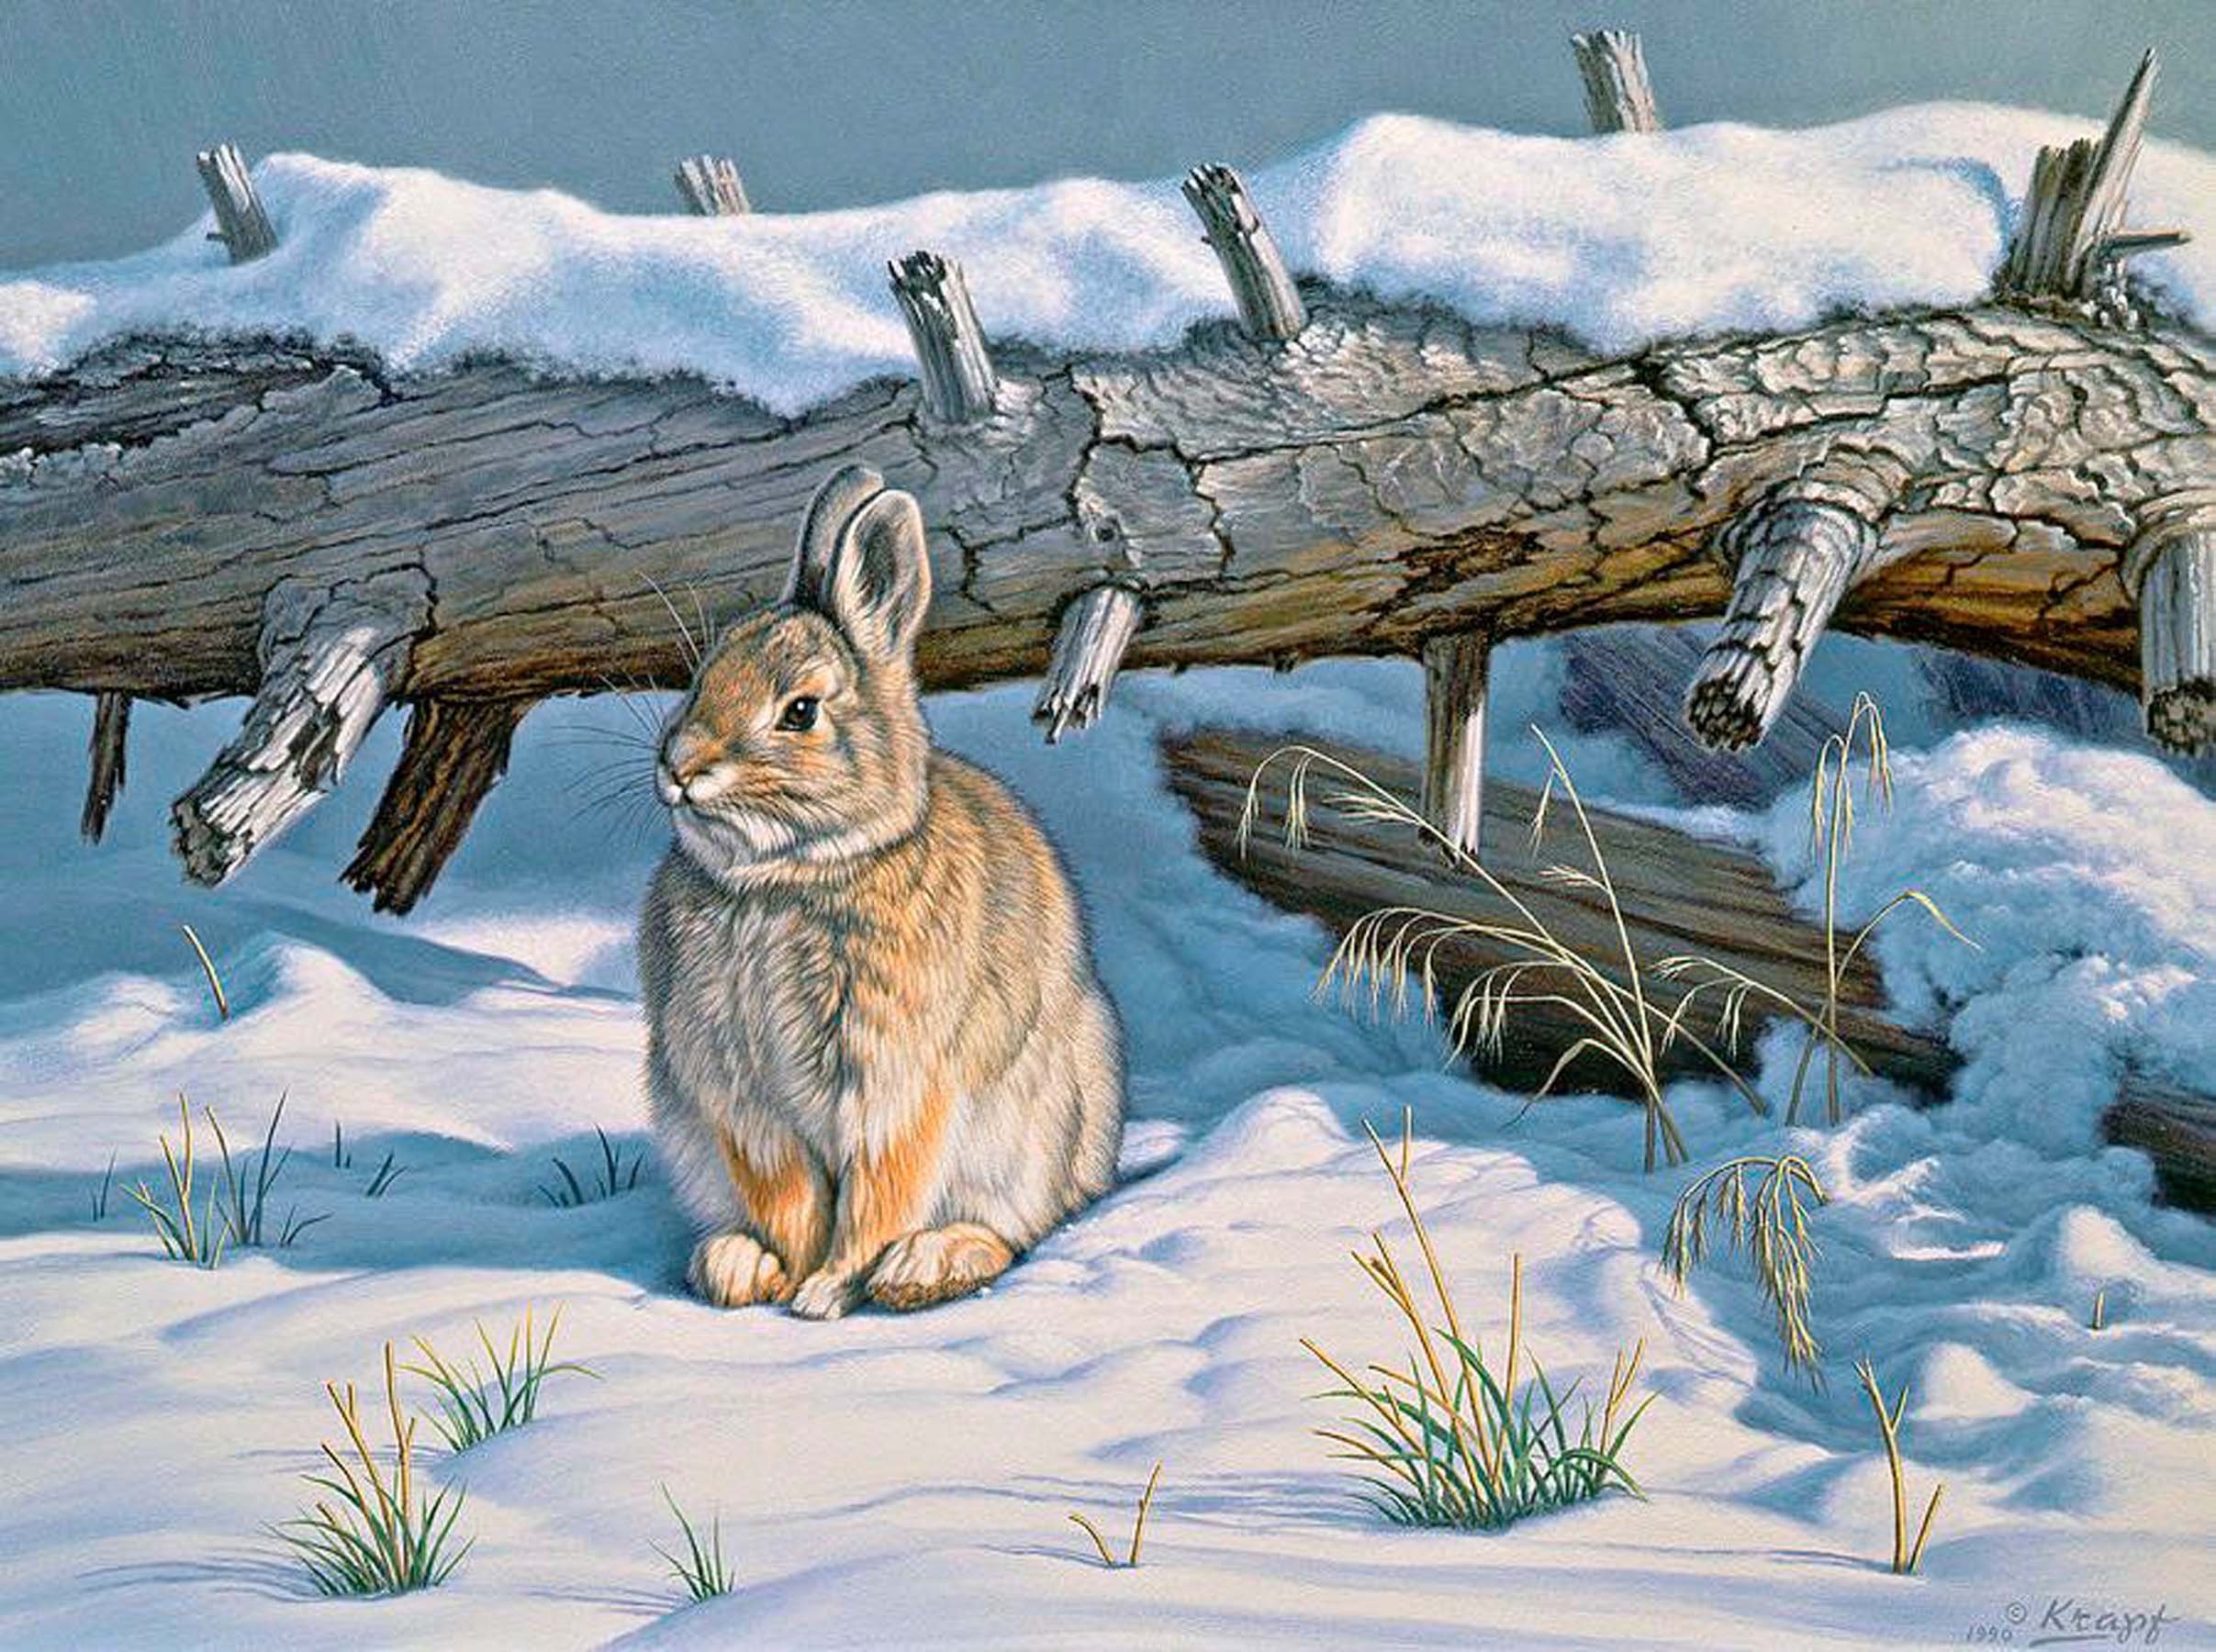 Пауль Крапф заяц. Заяц Беляк в лесу рисунок. Заяц художники анималисты. Художник - анималист Paul Krapf.